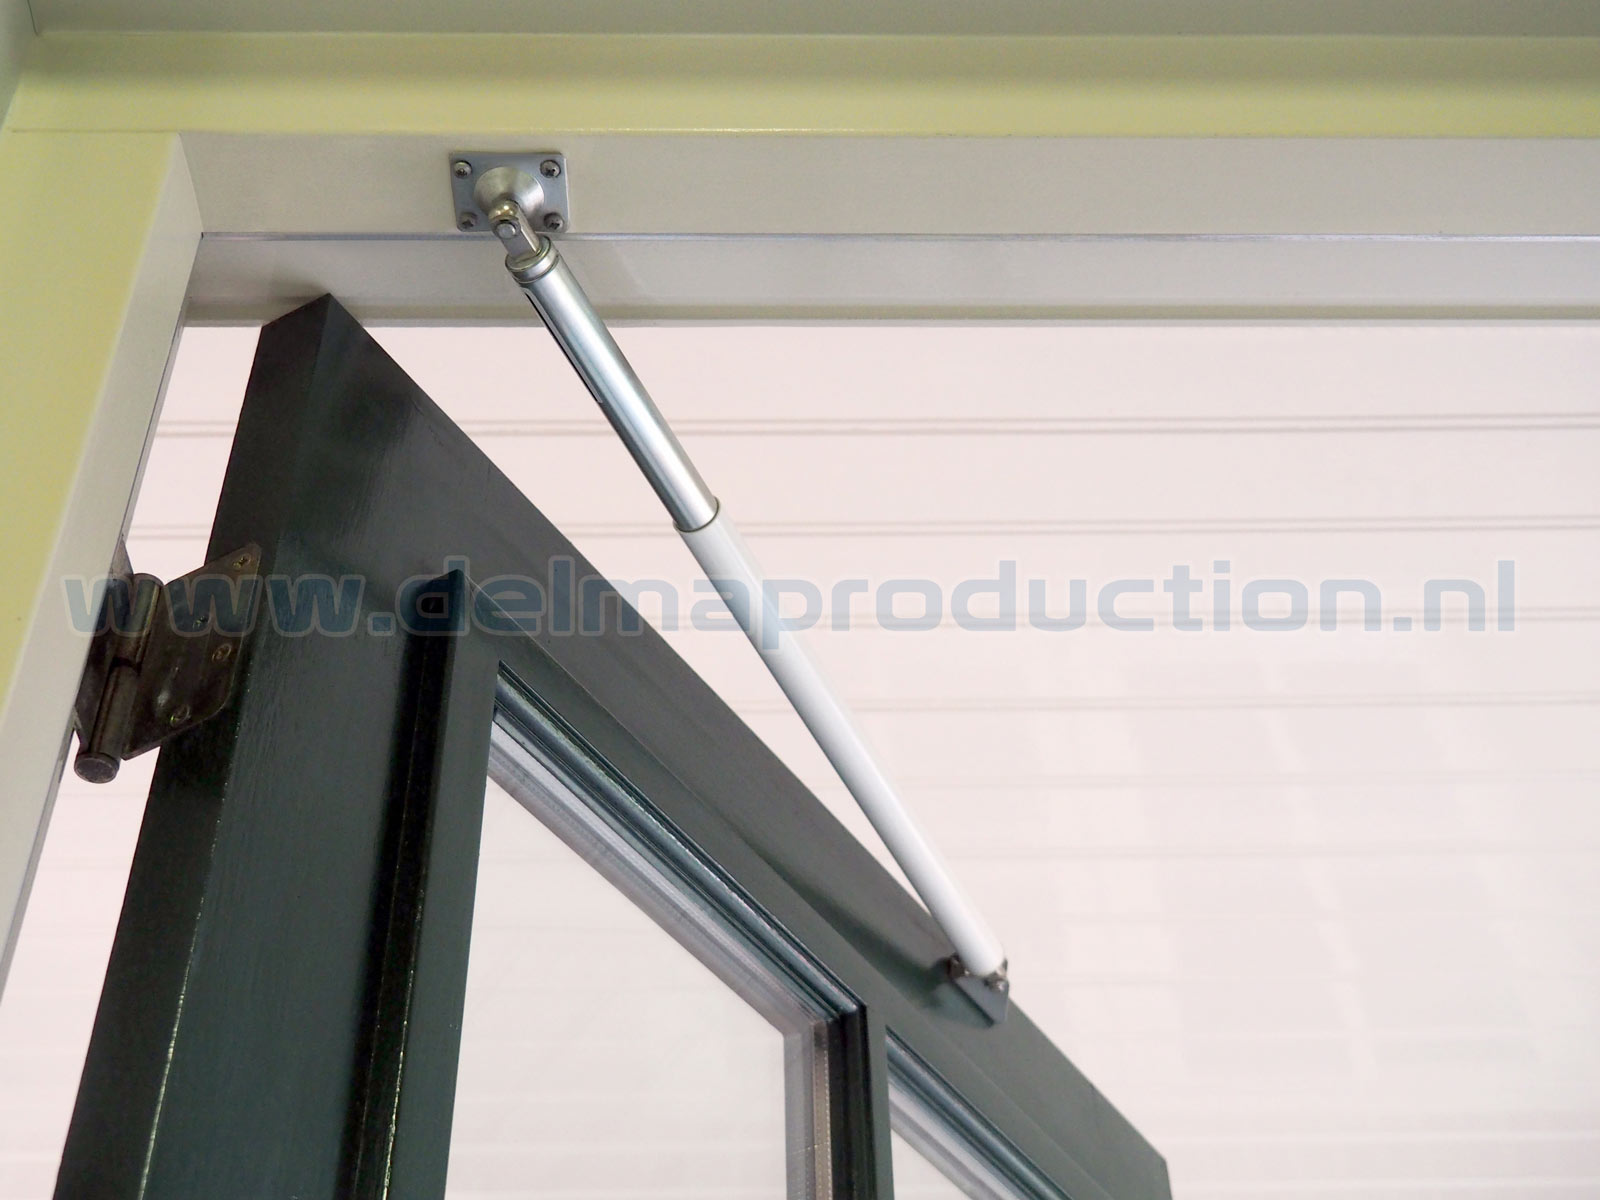 Türdämpfer H 1300 - Mit verstärktem Gelenk für schwere Türen